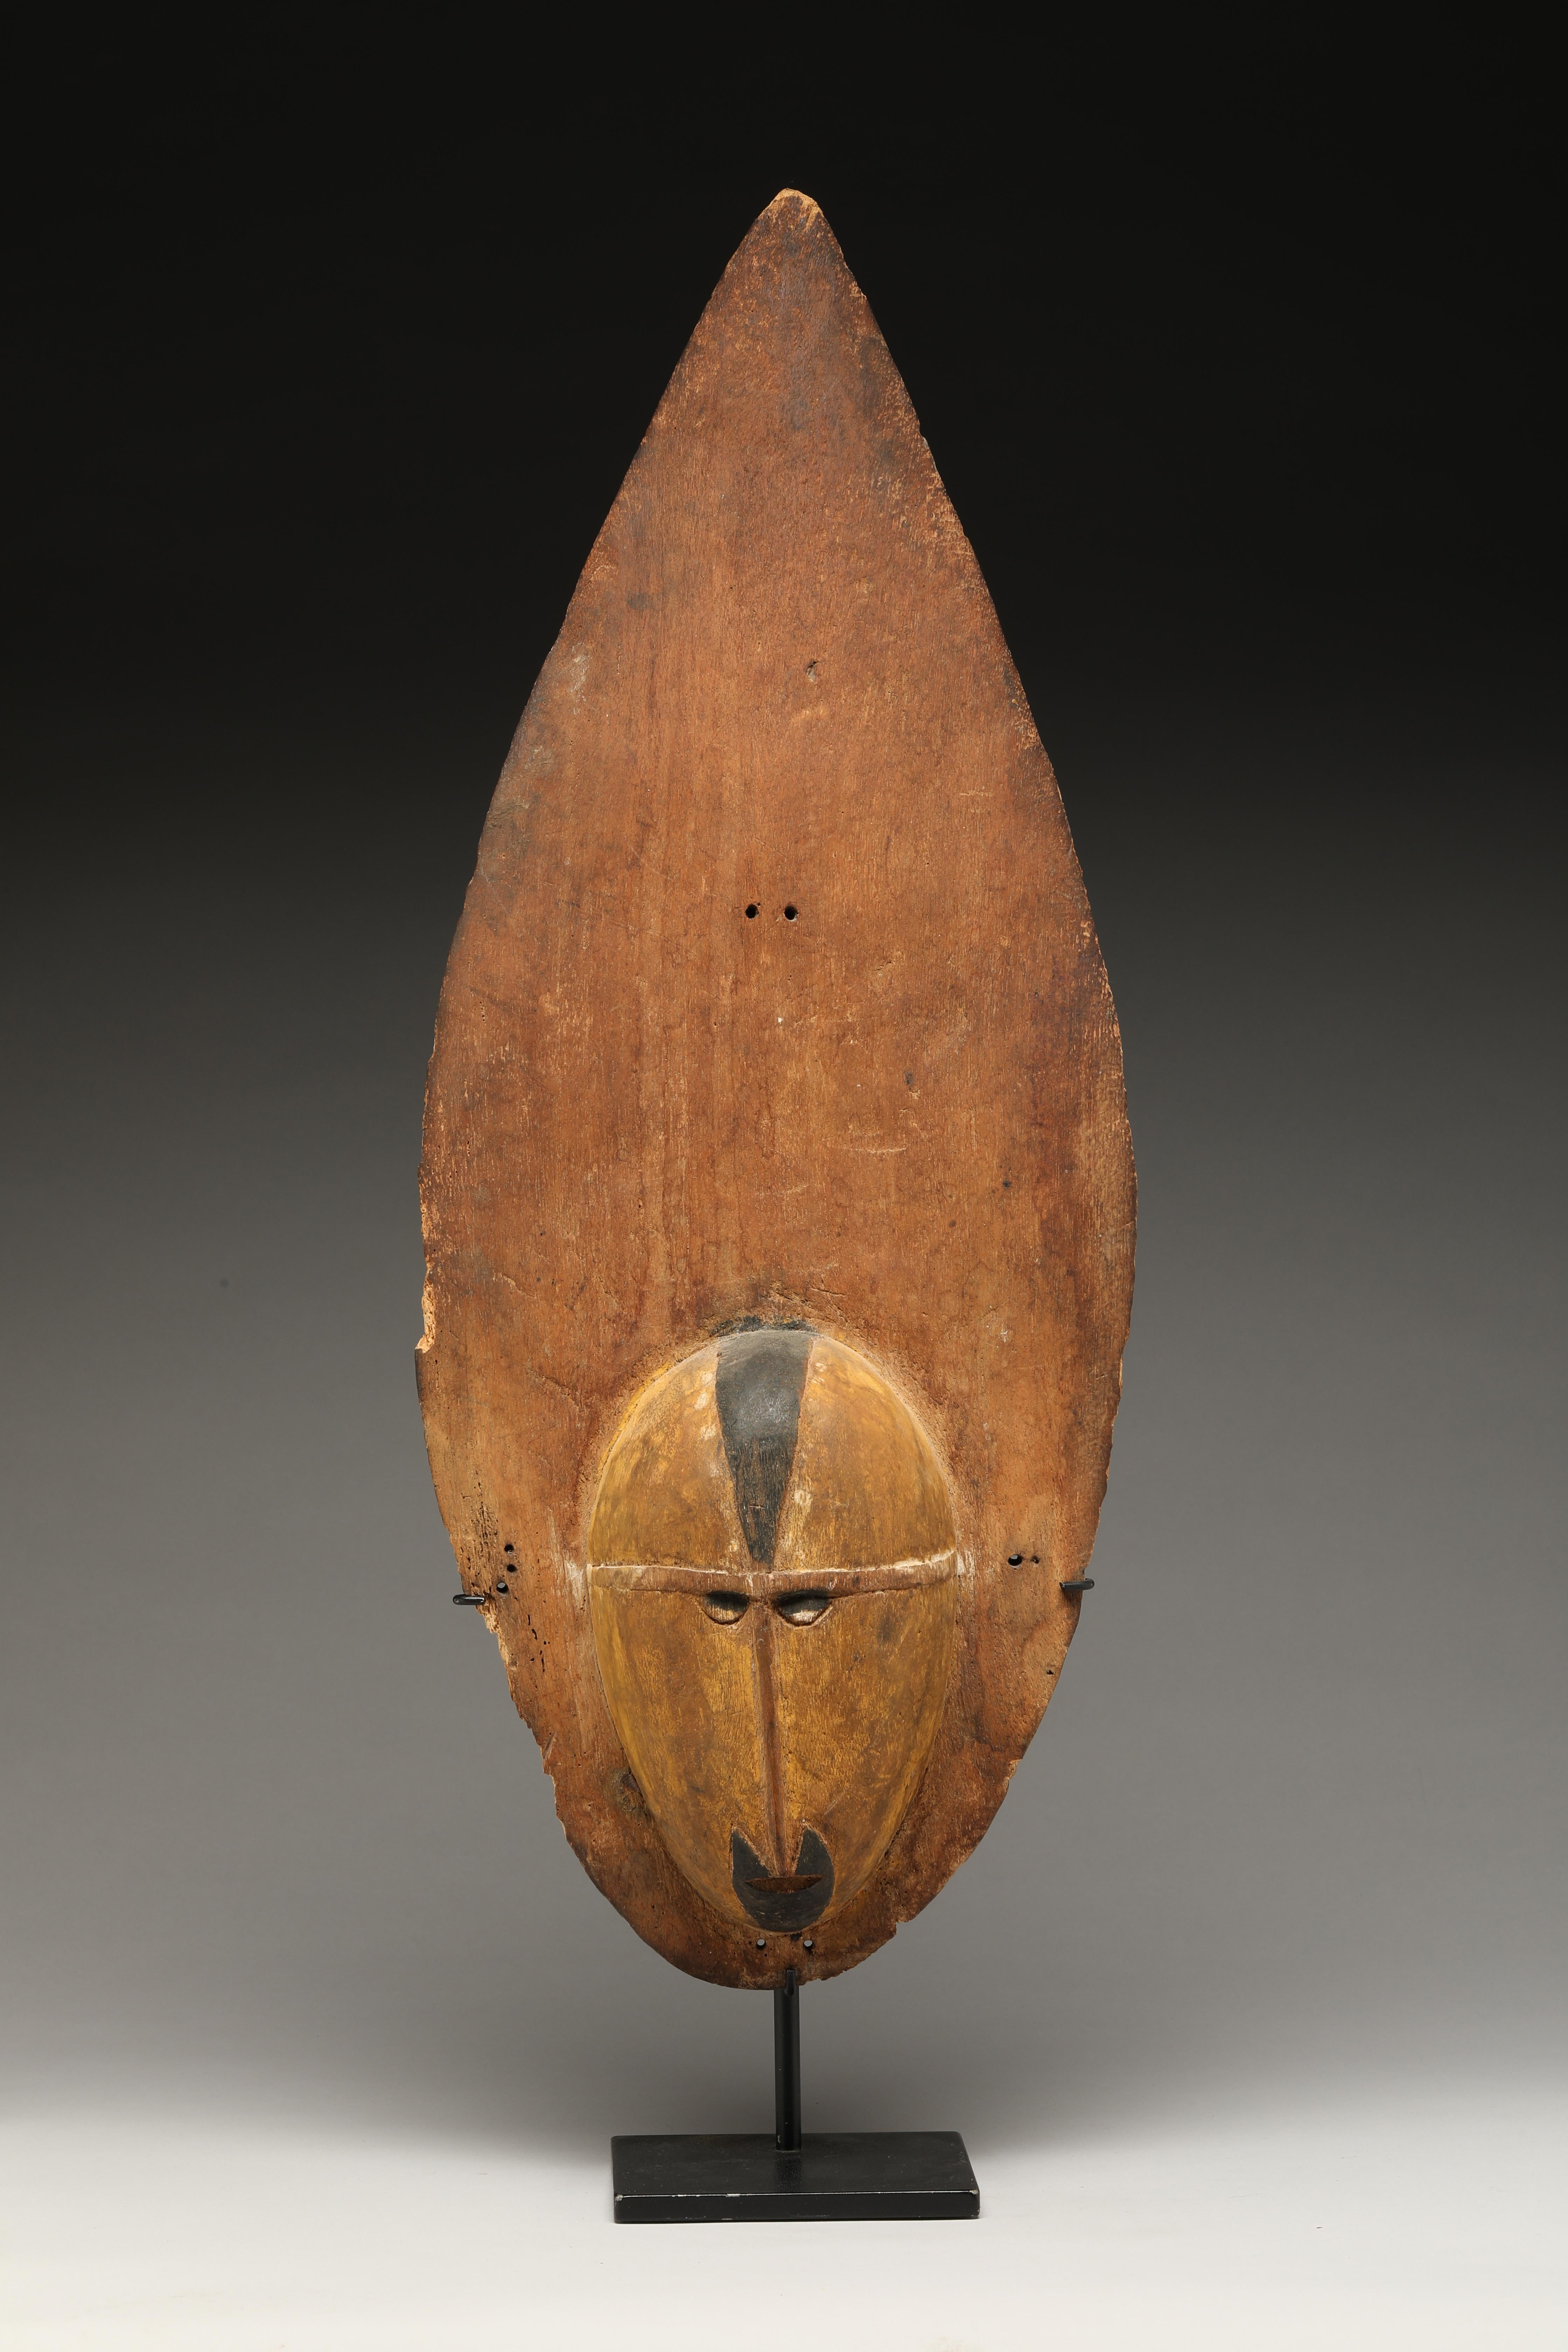 Masque d'igname en bois clair de Papouasie-Nouvelle-Guinée Sepik. Forme élégante en forme de flamme, bois ancien oxydé avec des accents noirs, traces de pigments jaunes et blancs. Petits trous à l'origine pour la fixation. Visage raffiné et bien